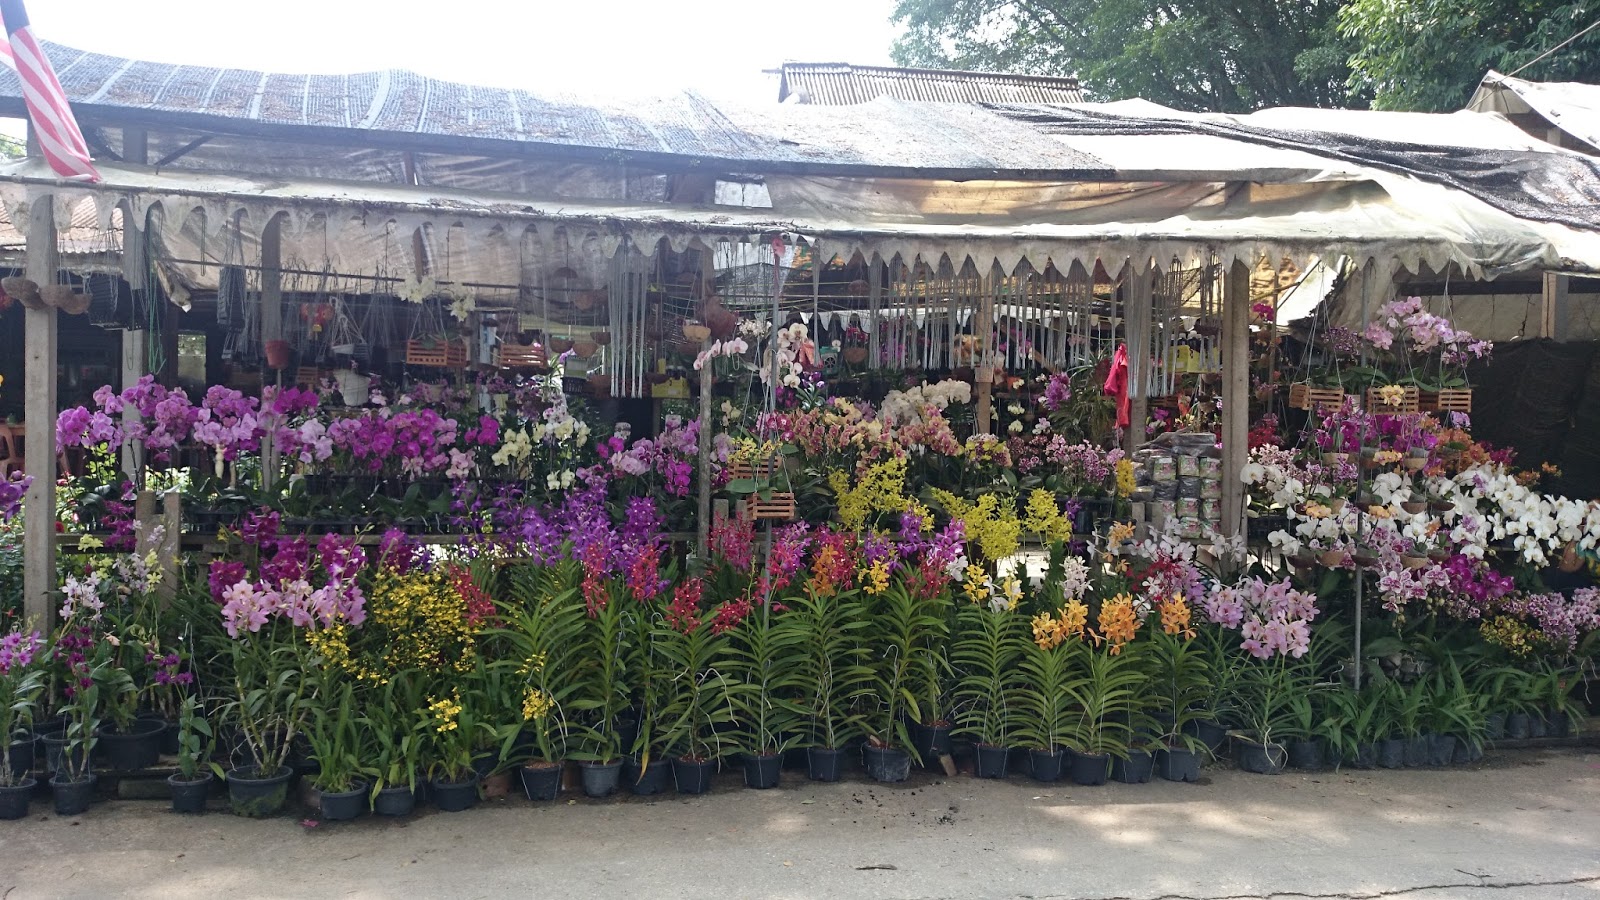 Today BAHAGIA Kedai bunga paling murah di Sungai Buloh.